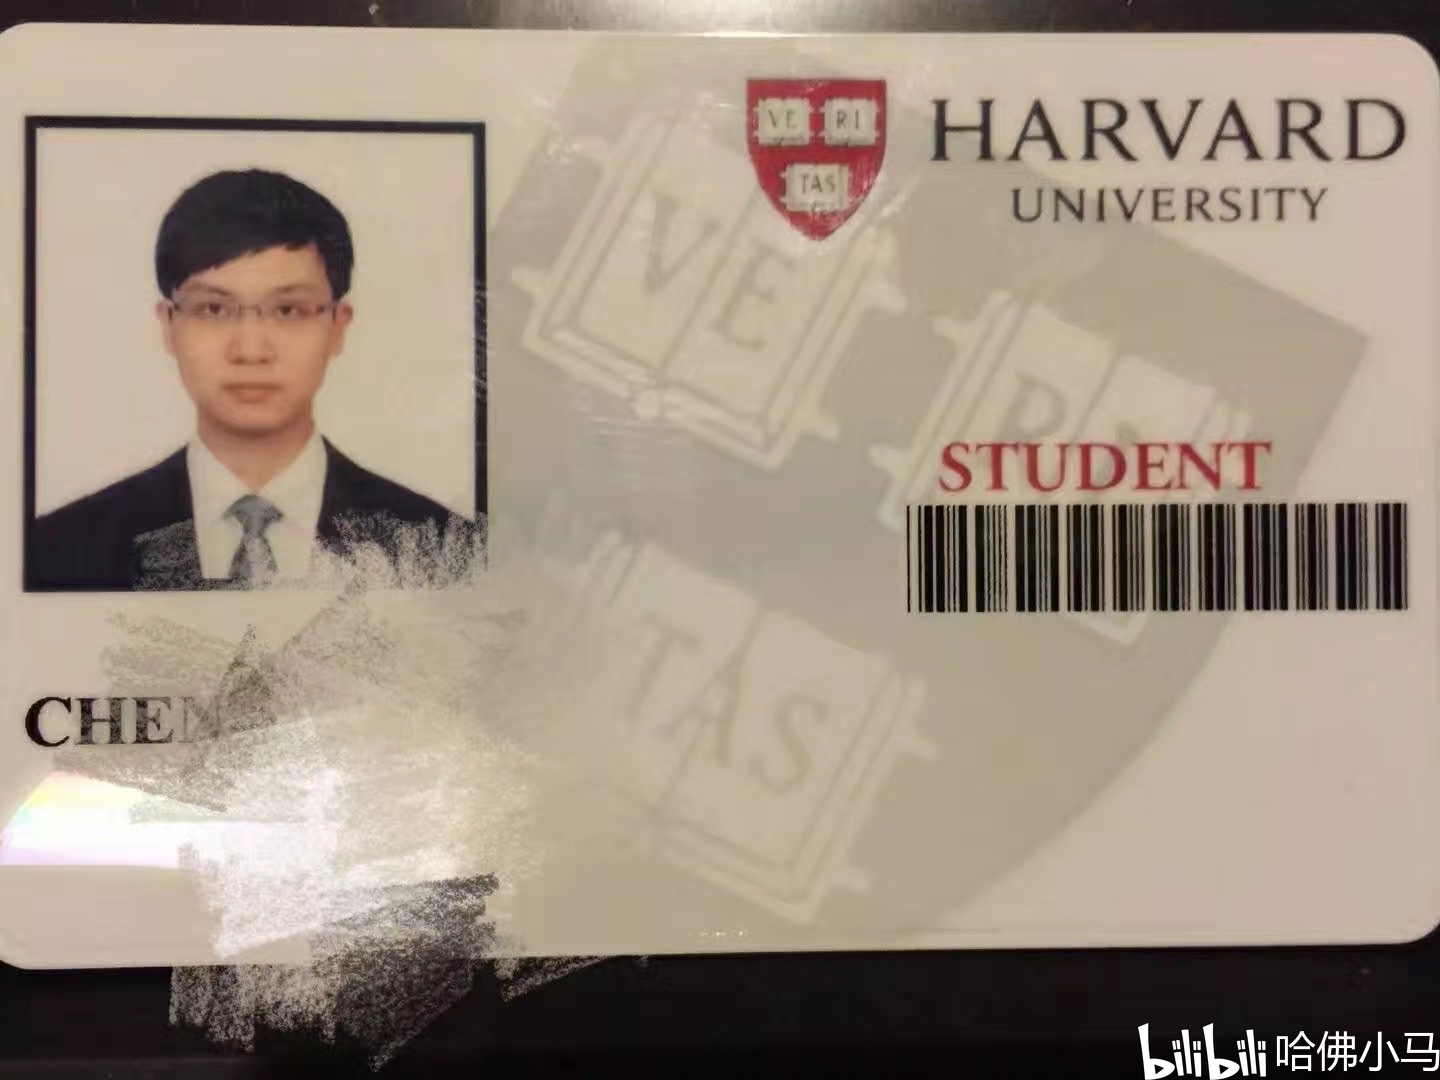 哈佛大学学生证